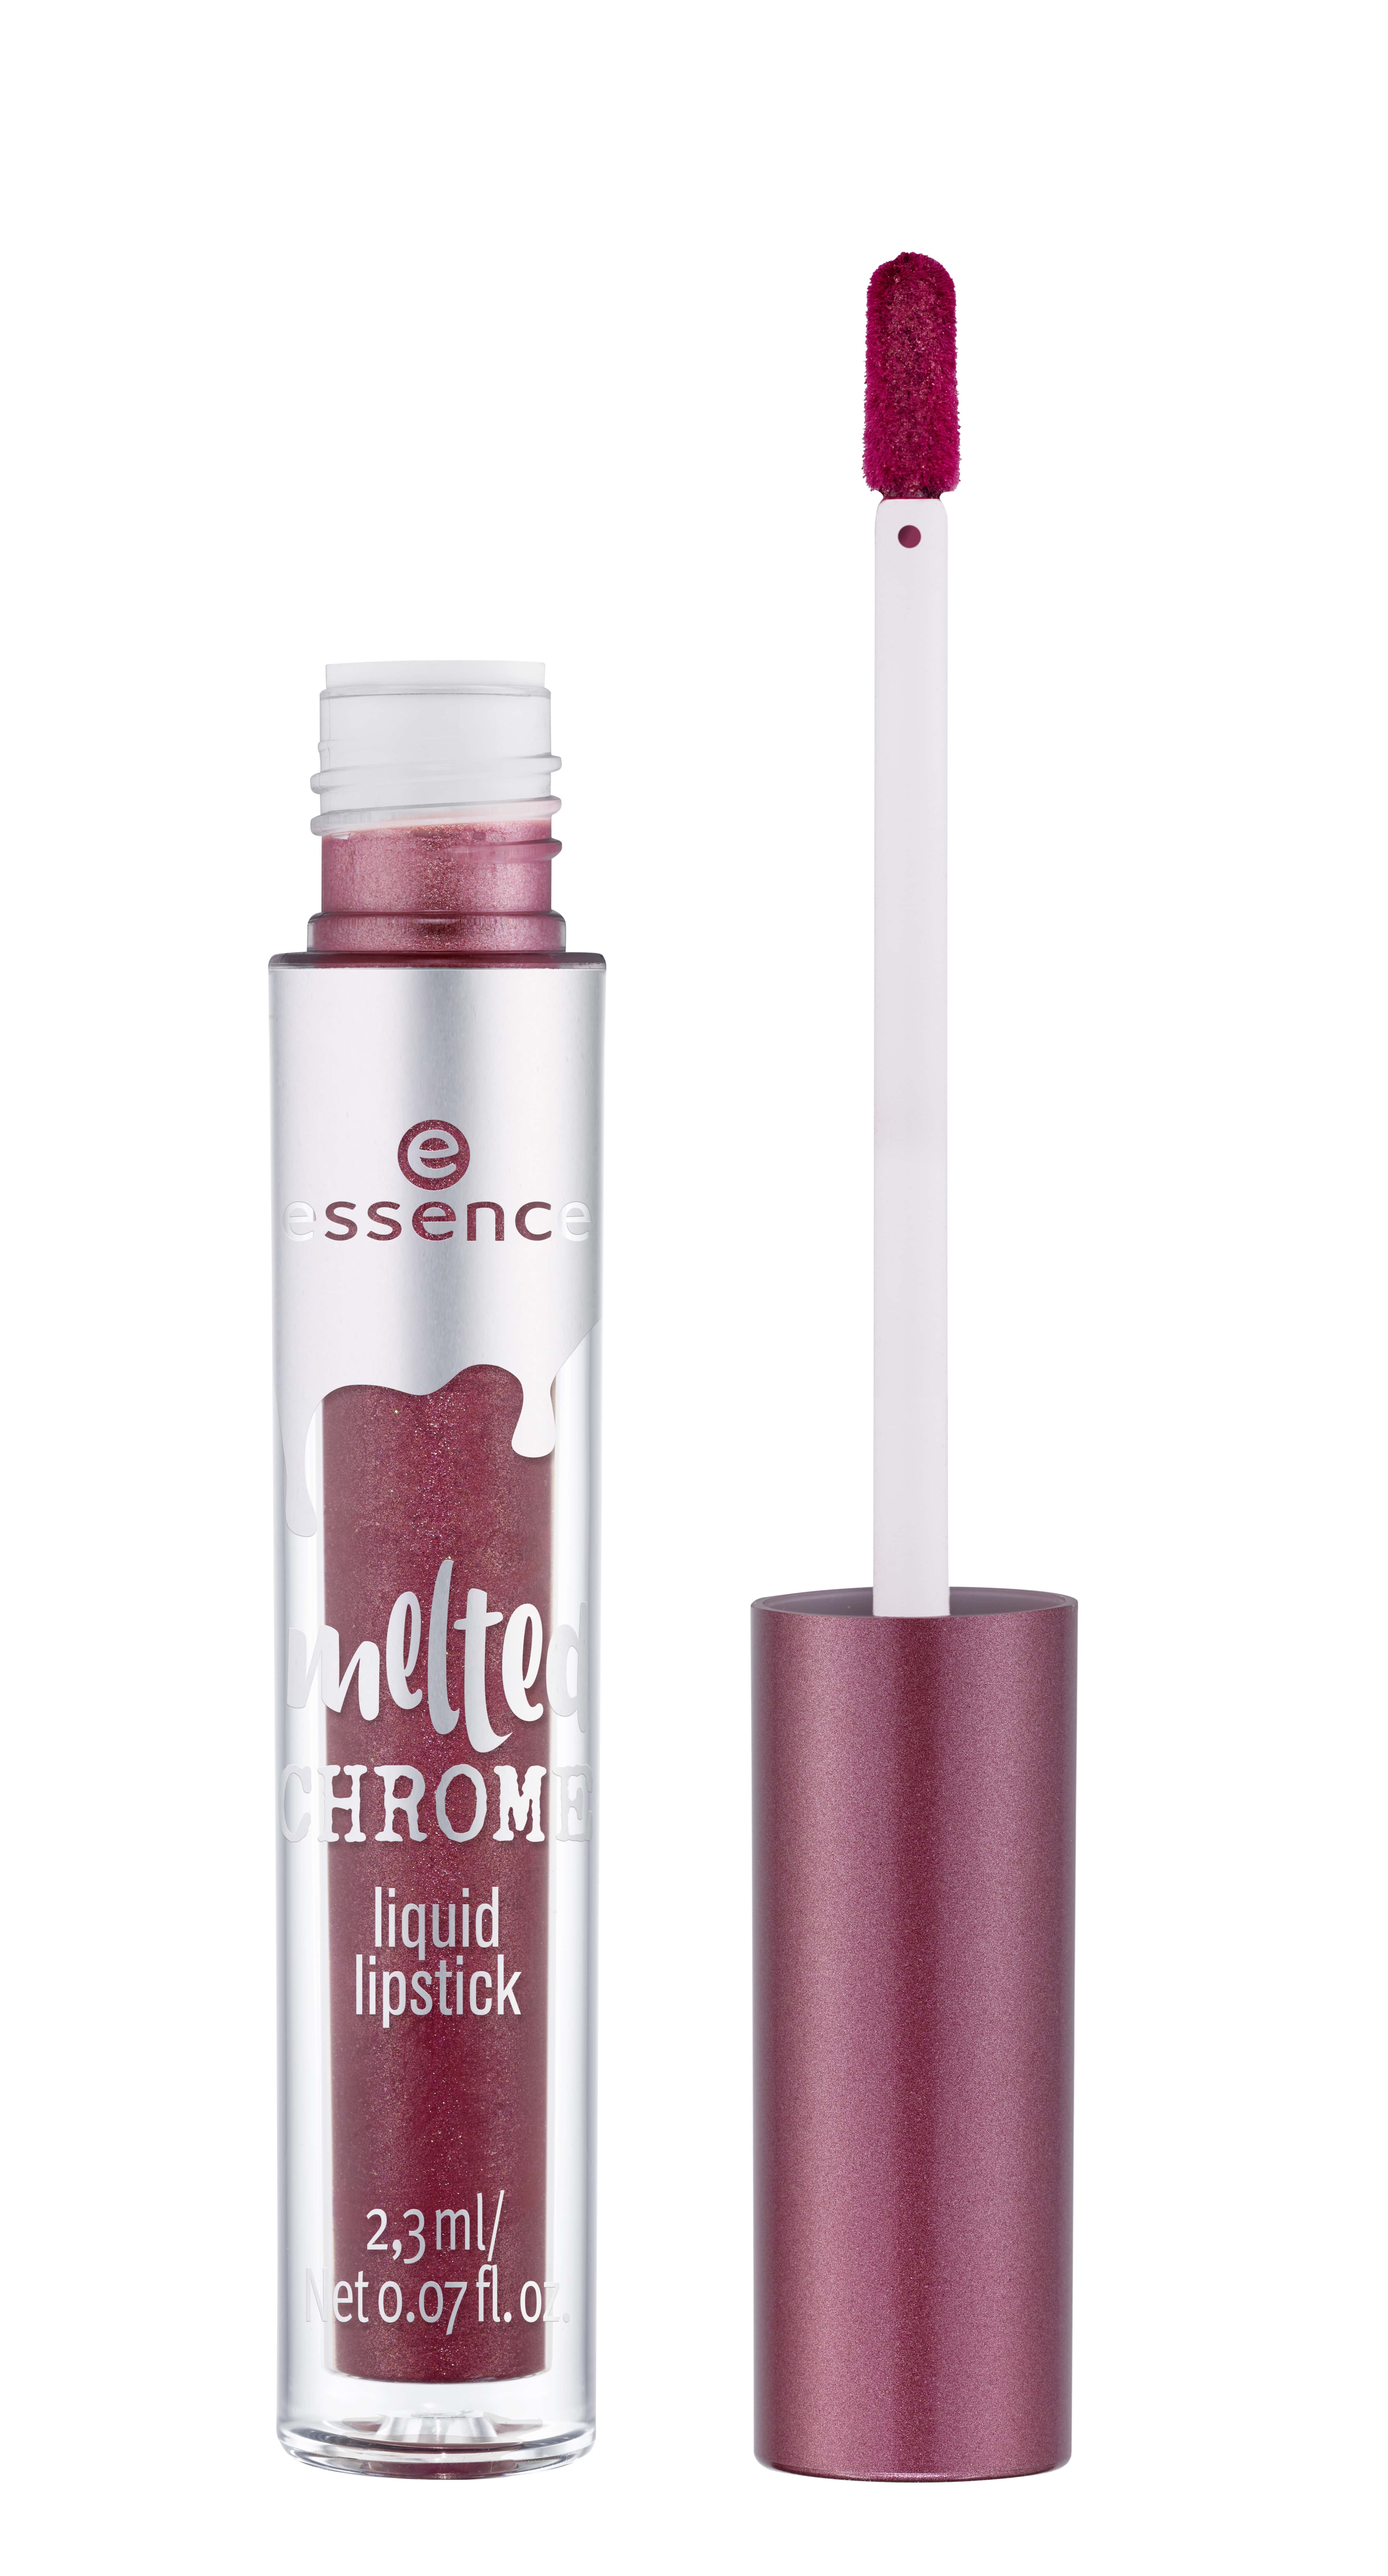 essence-melted-chrome-liquid-lipstick-e3-50-copy